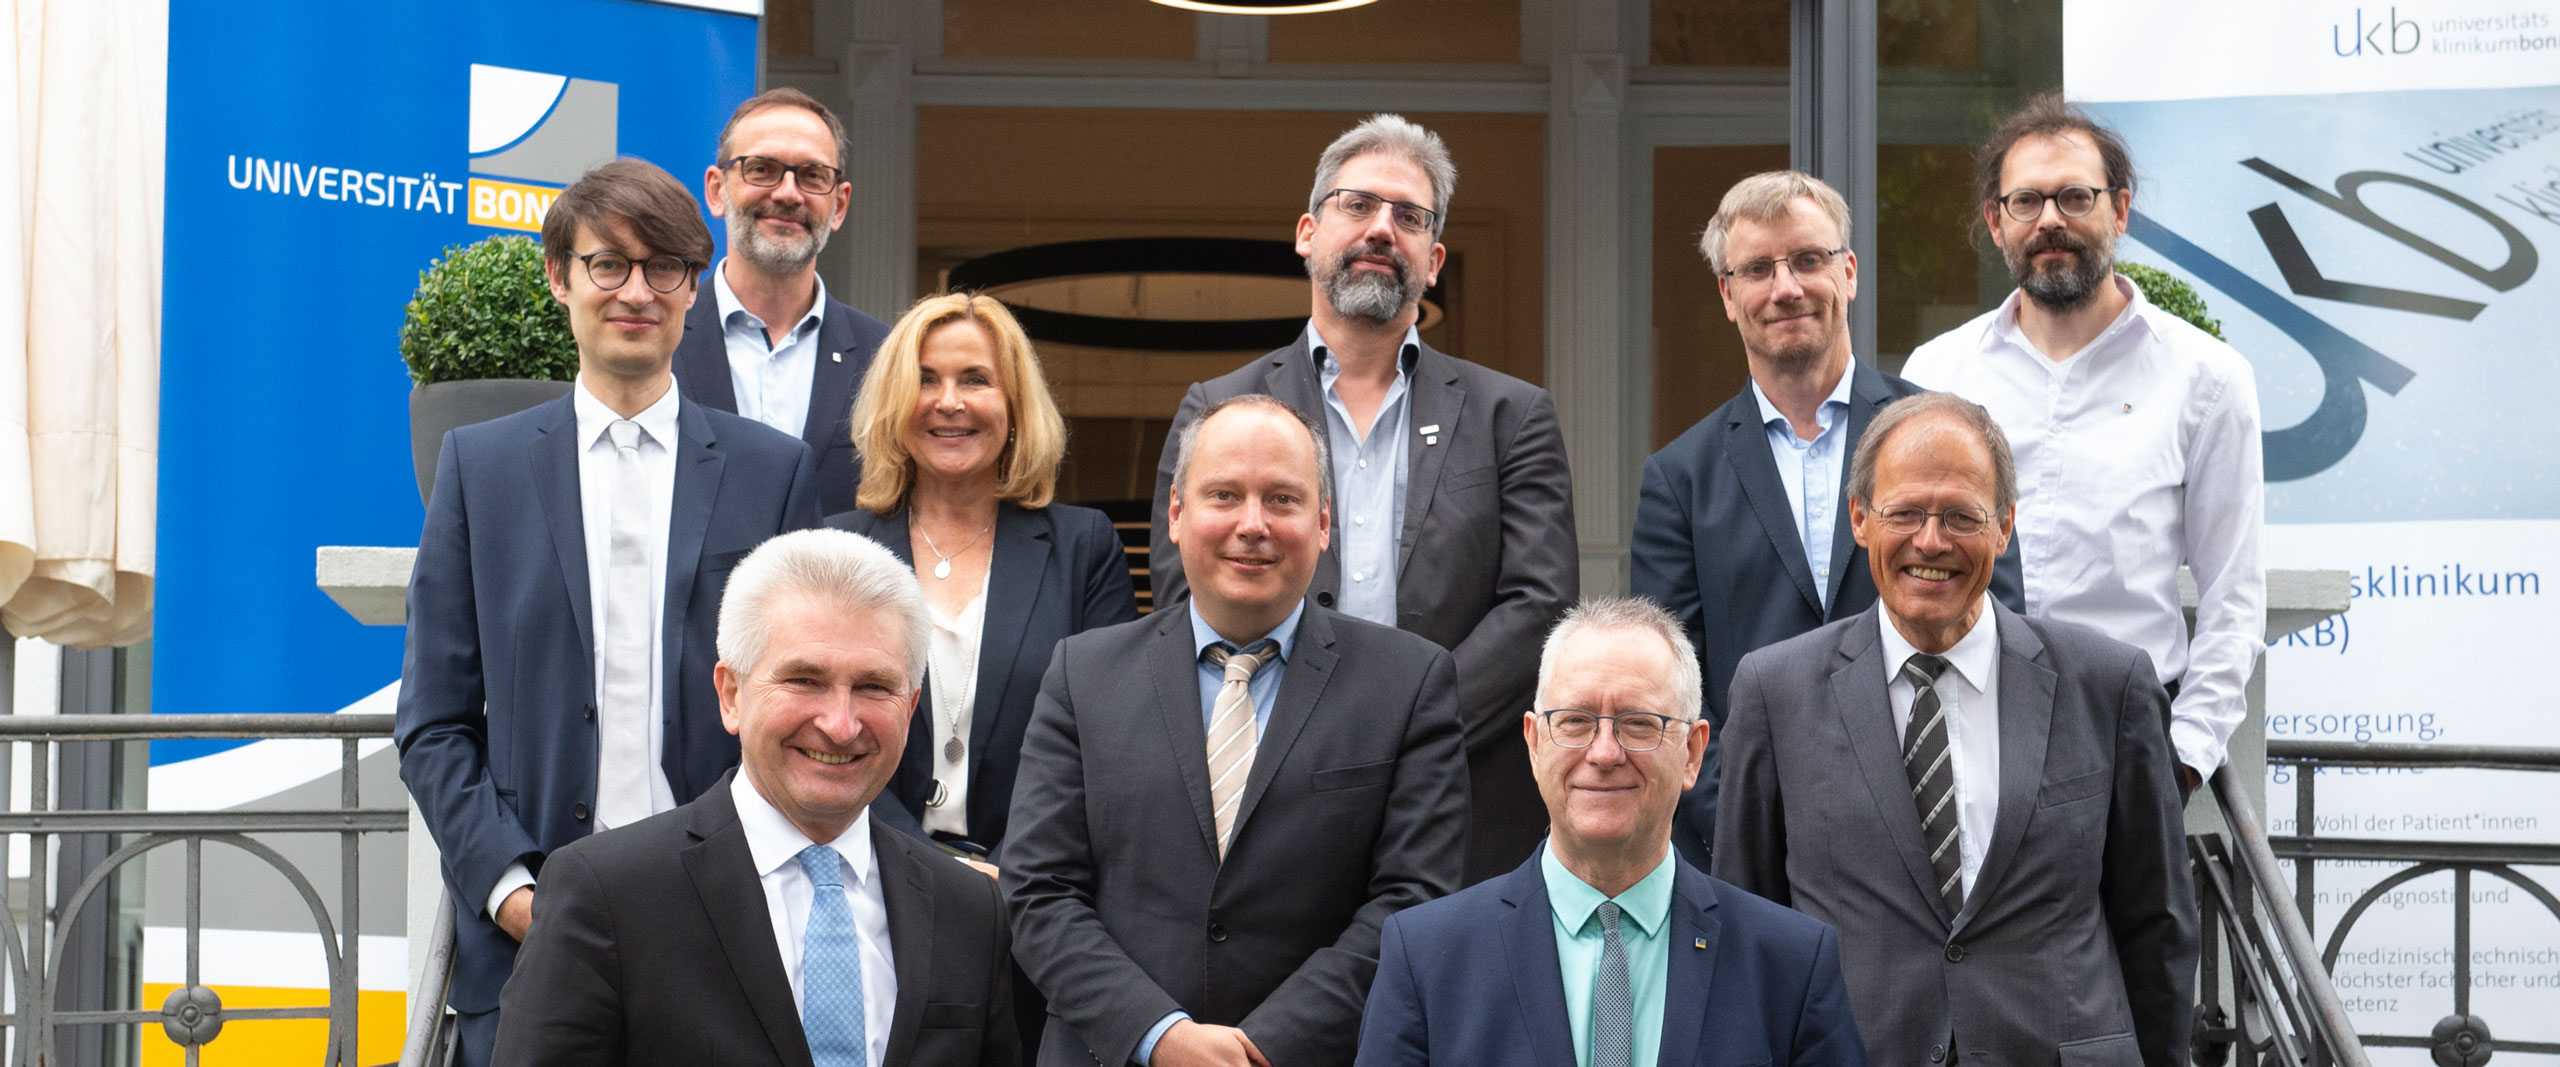 Landesregierung unterstützt Projekt zur Entwicklung medizinischer Software am Universitätsklinikum Bonn mit 1,8 Millionen Euro